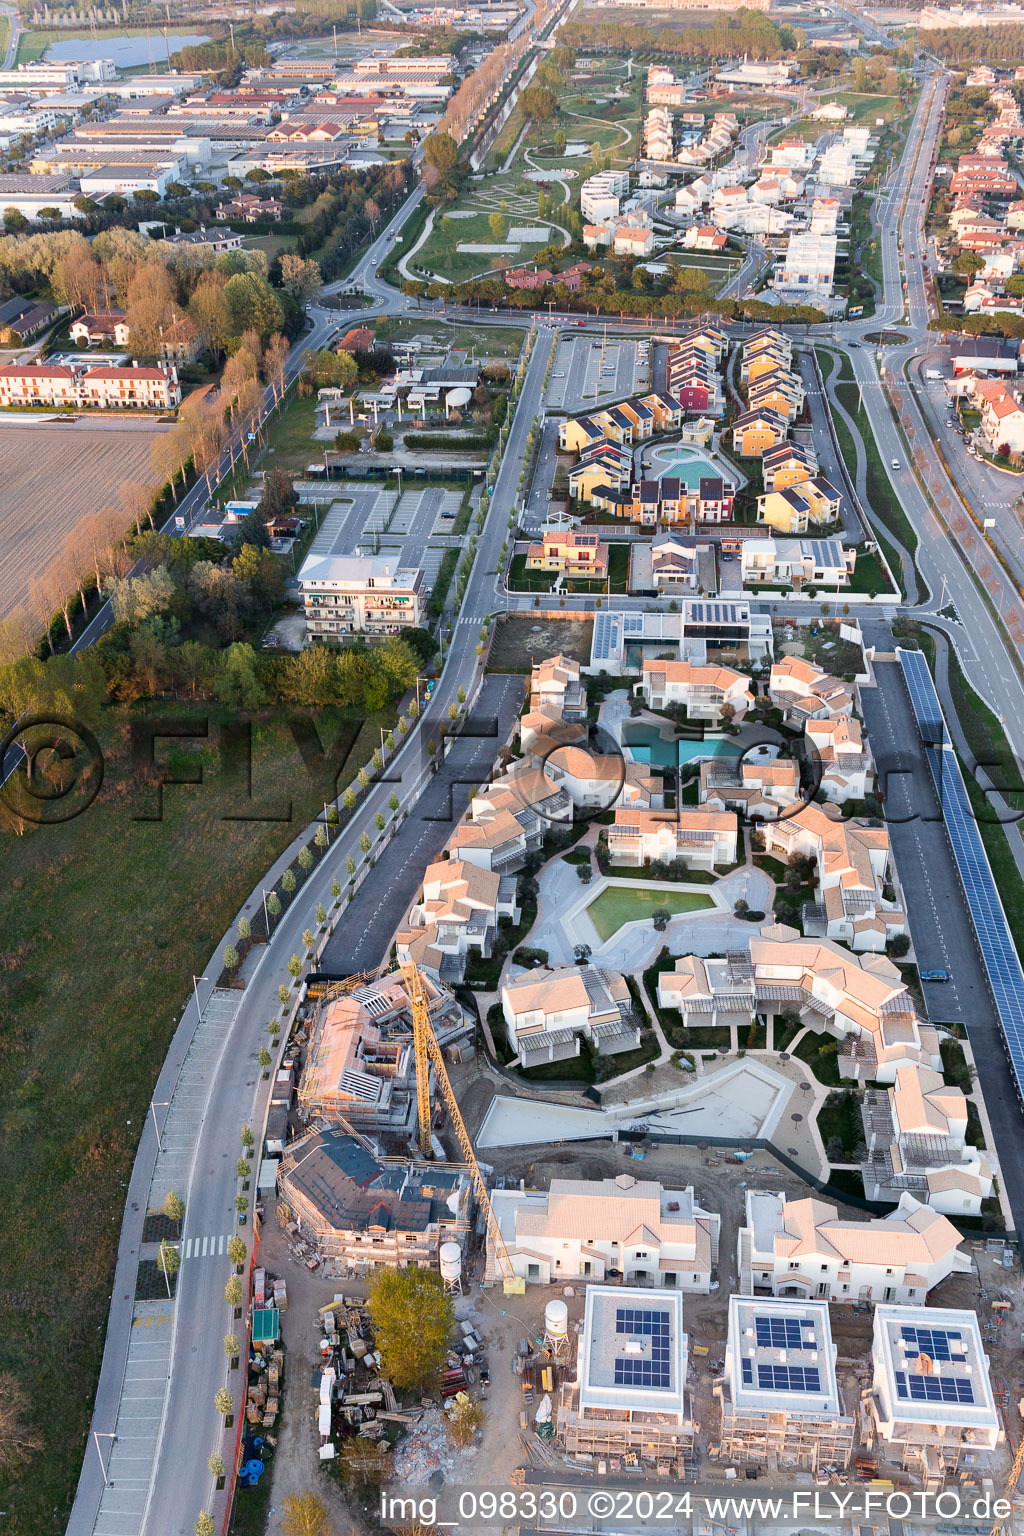 Luftbild von Ferienhaus- Anlage des Ferienparks Les Maisons in Jesolo in Venetien, Italien